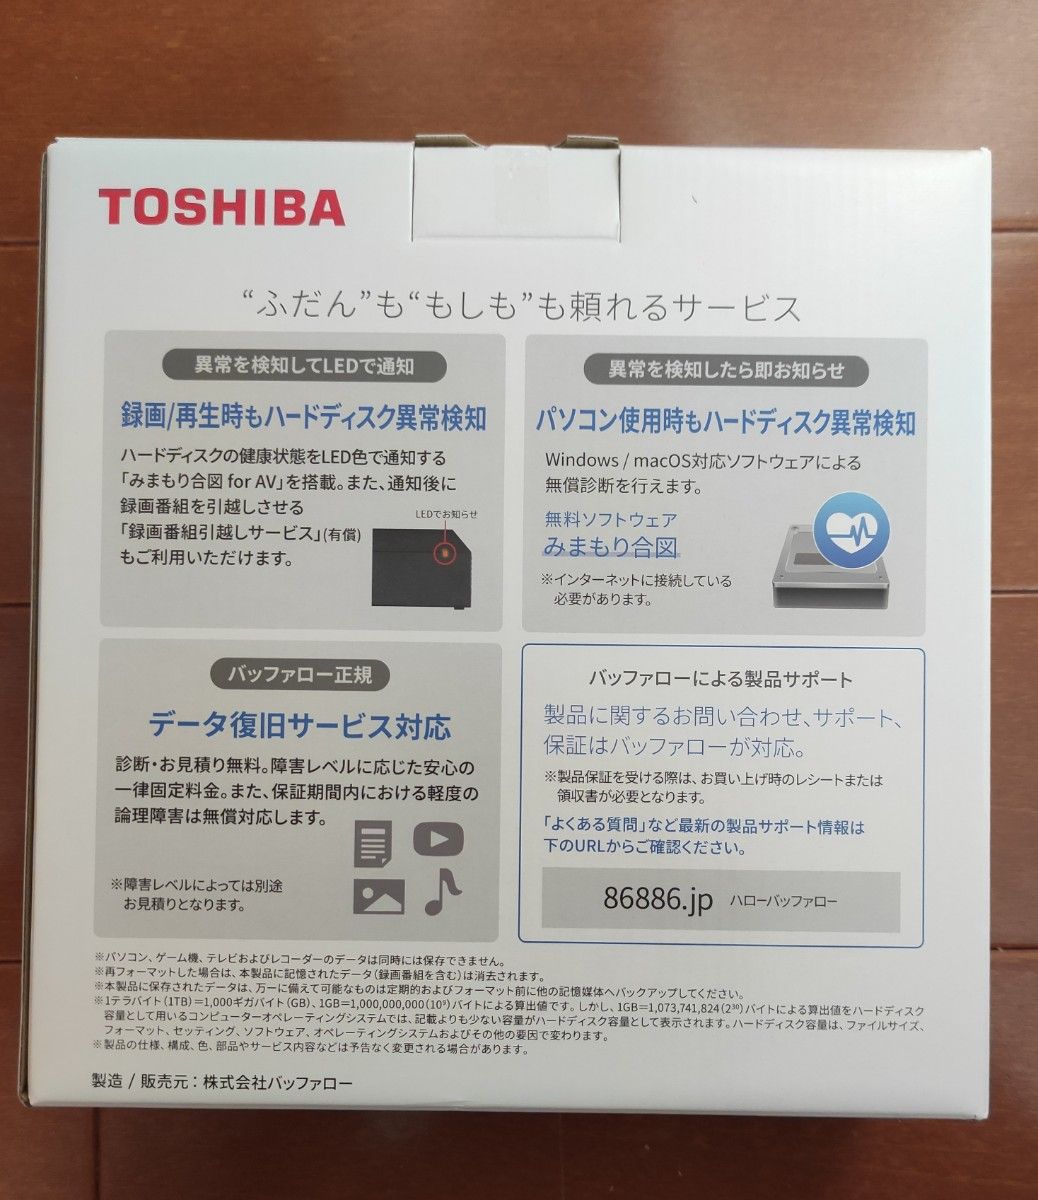 新品未開封品 6TB 外付けハードディスク 東芝 バッファロー TOSHIBA BUFFALO